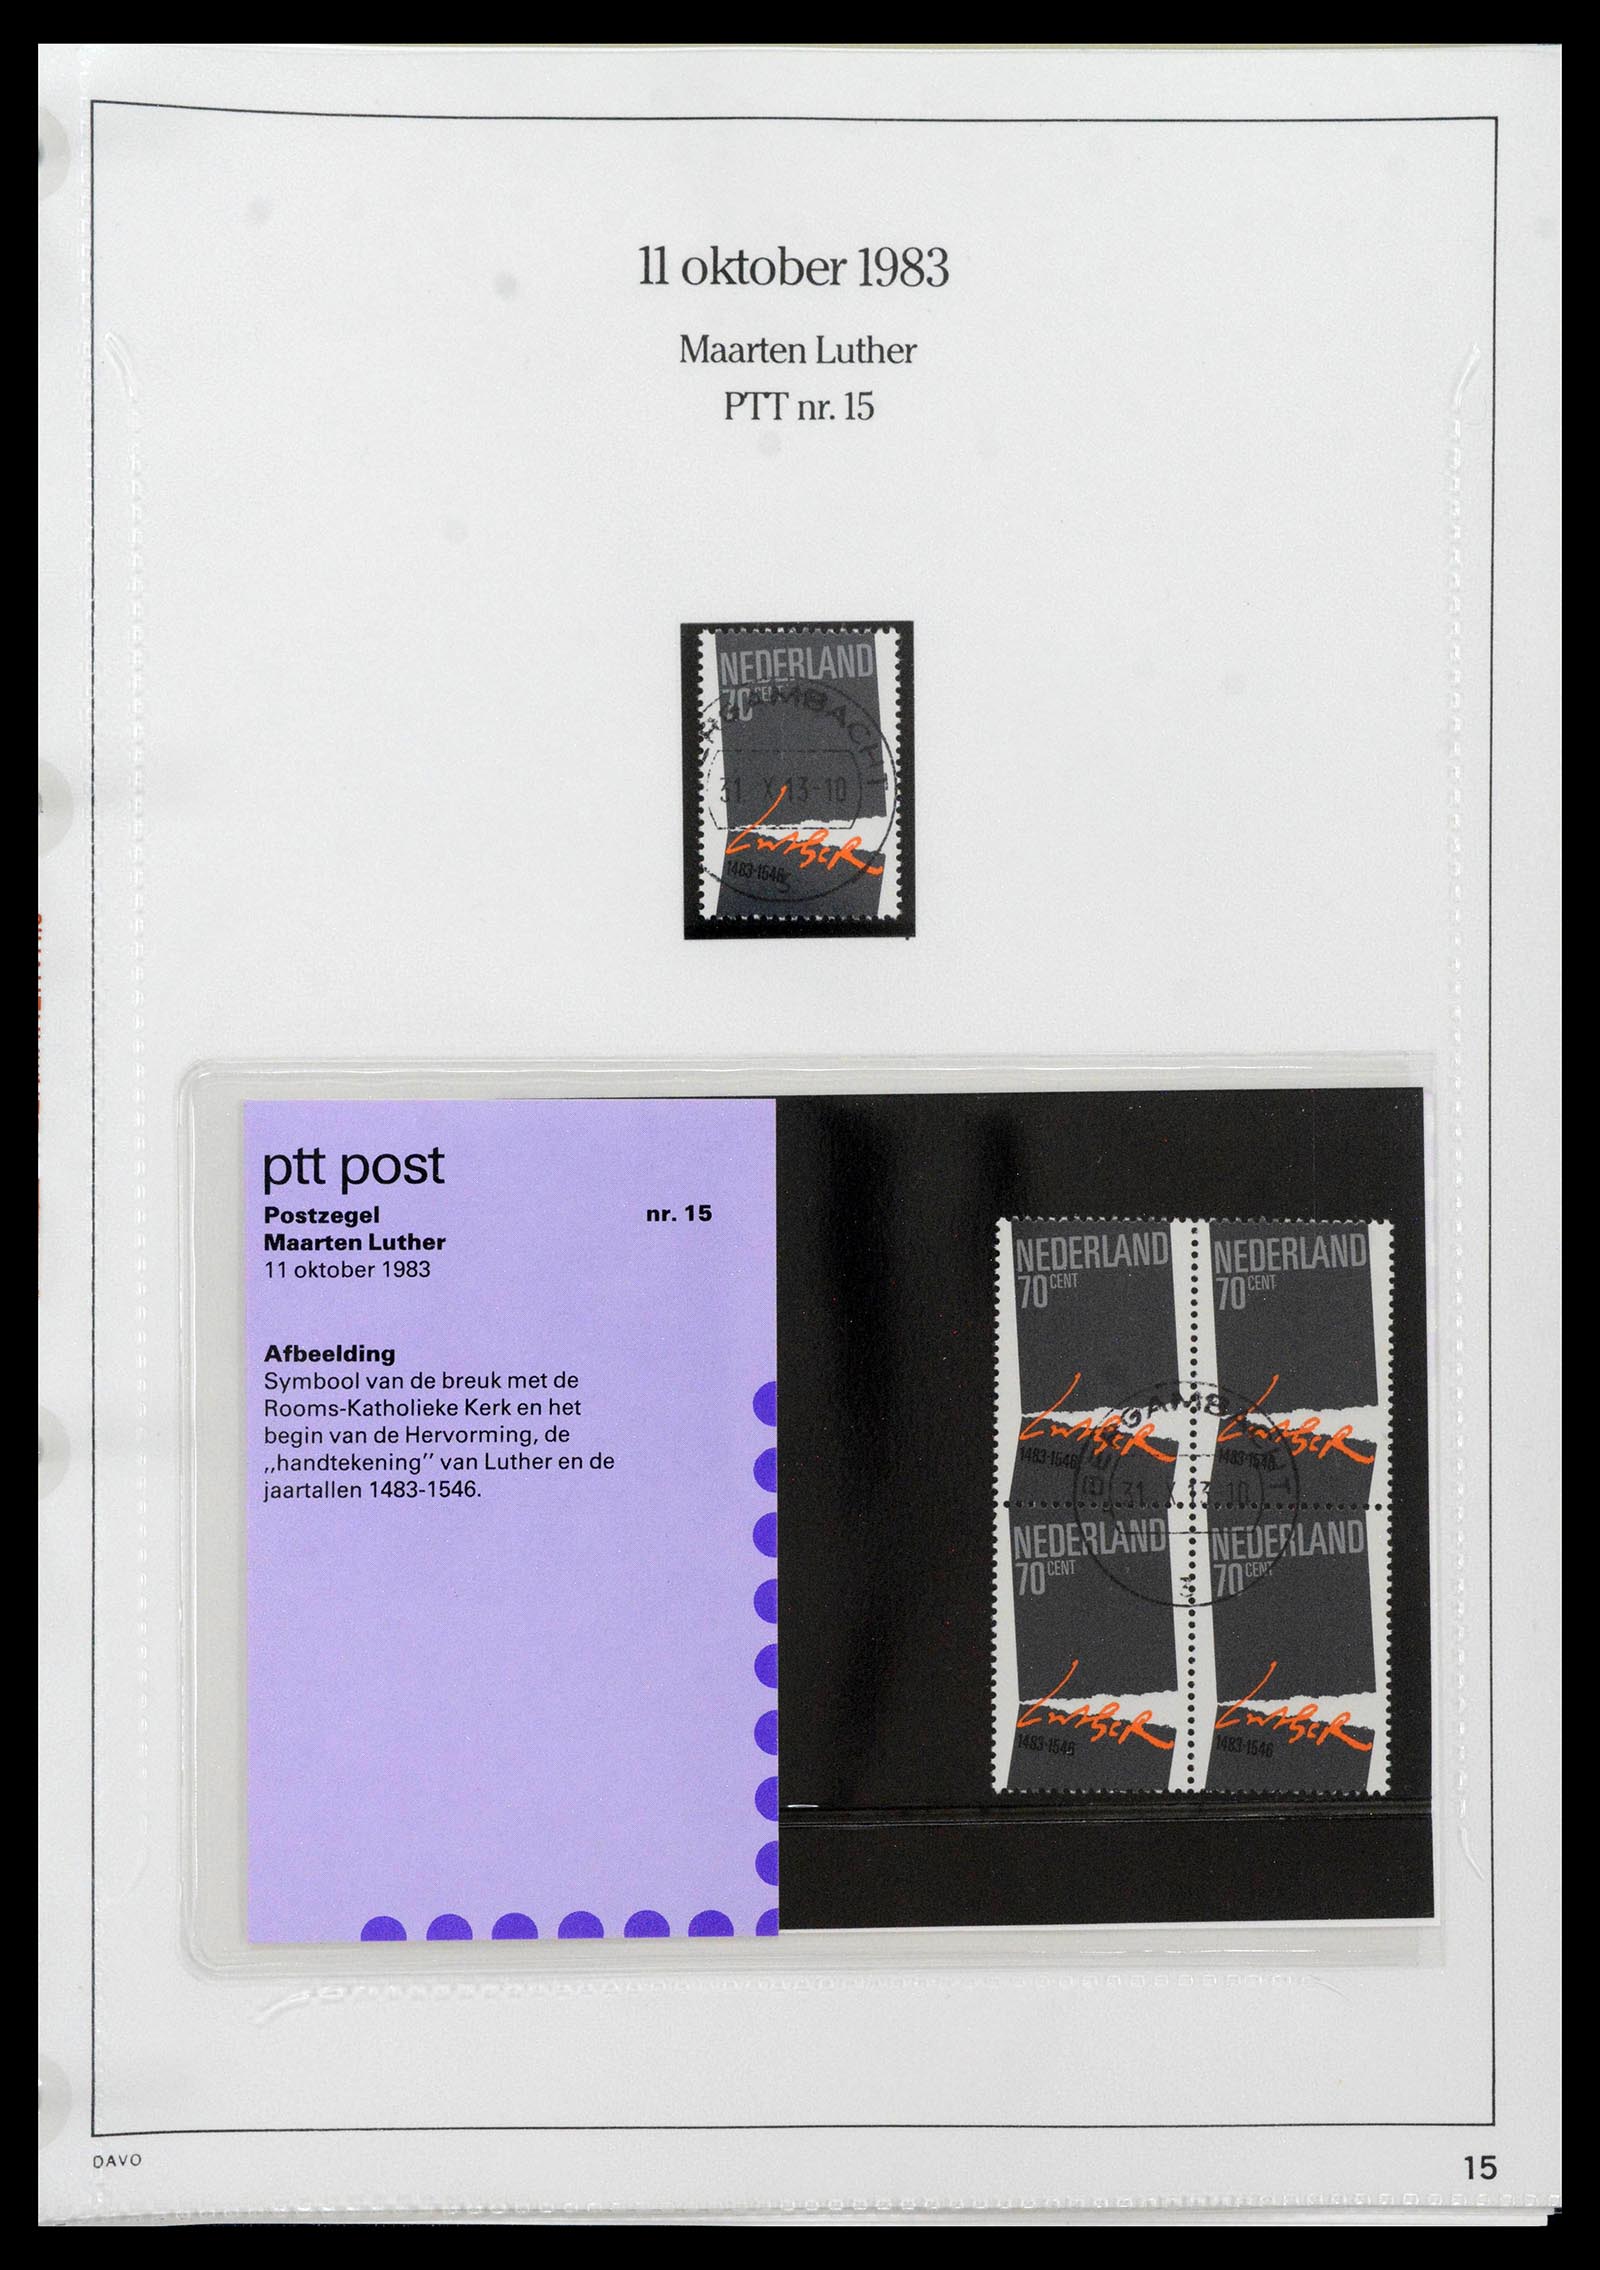 39121 0015 - Stamp collection 39121 Netherlands presentationpacks 1982-2001.